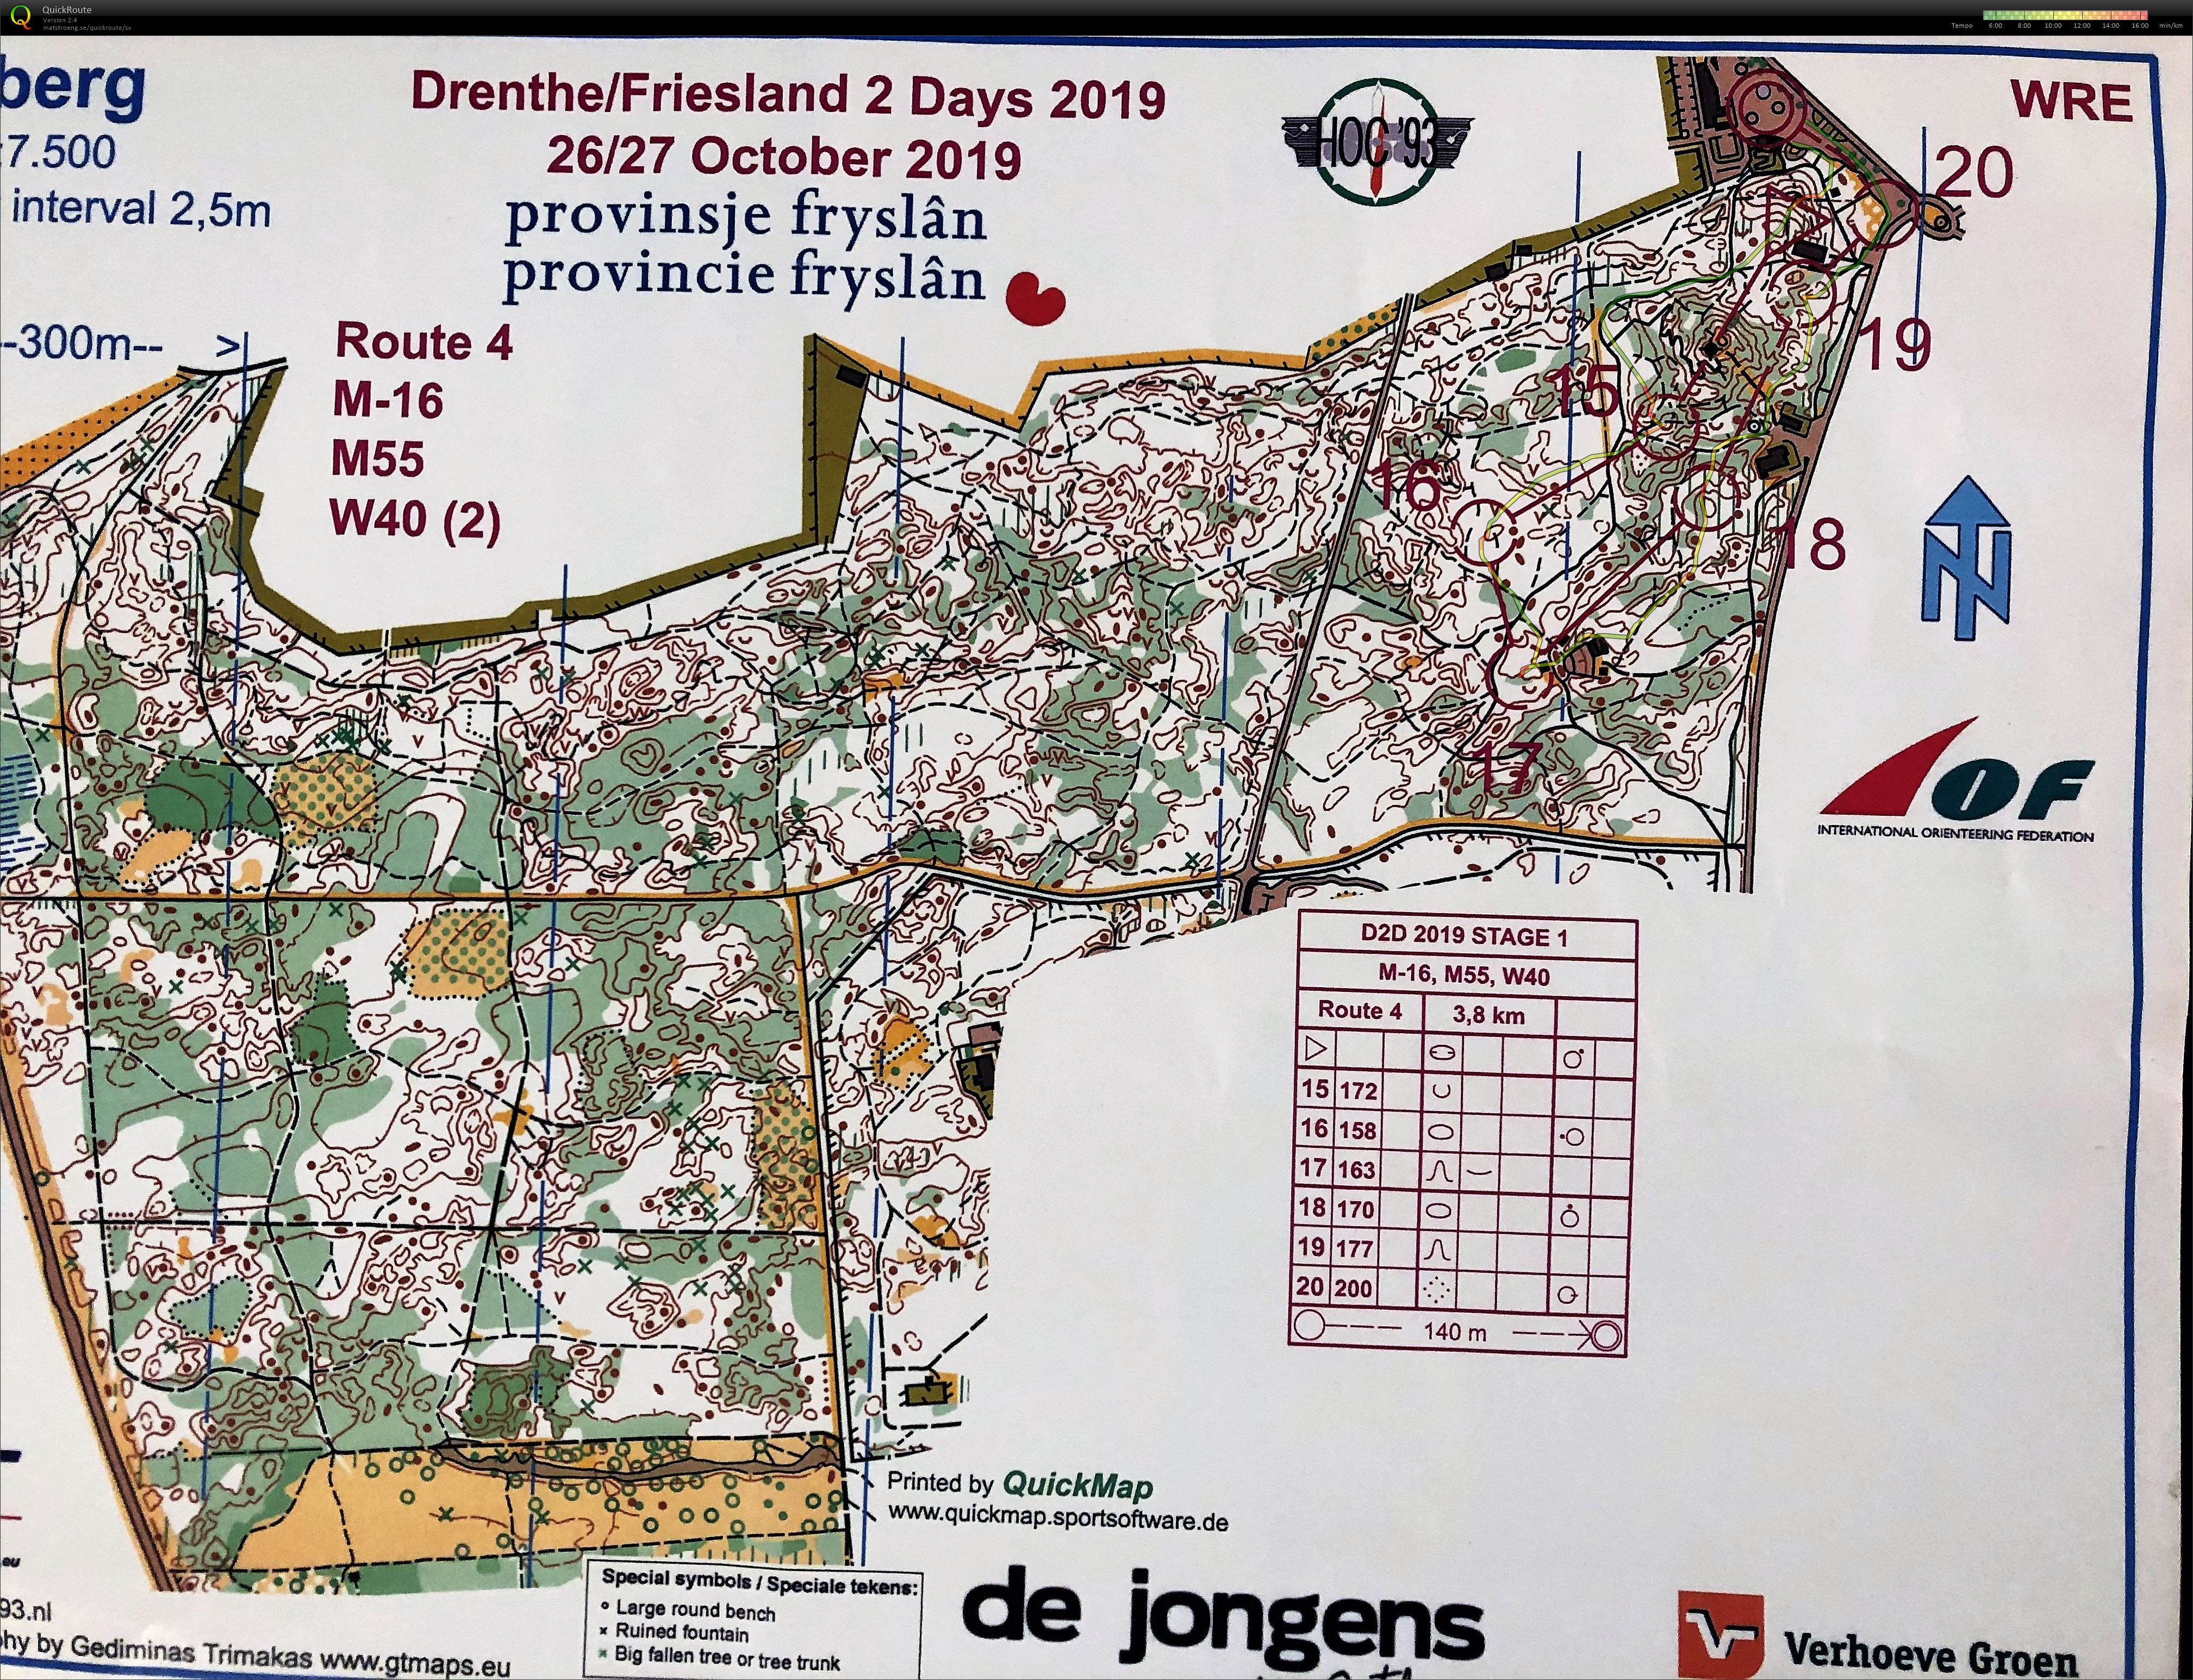 Drenthe 2days Medel del2 (26/10/2019)